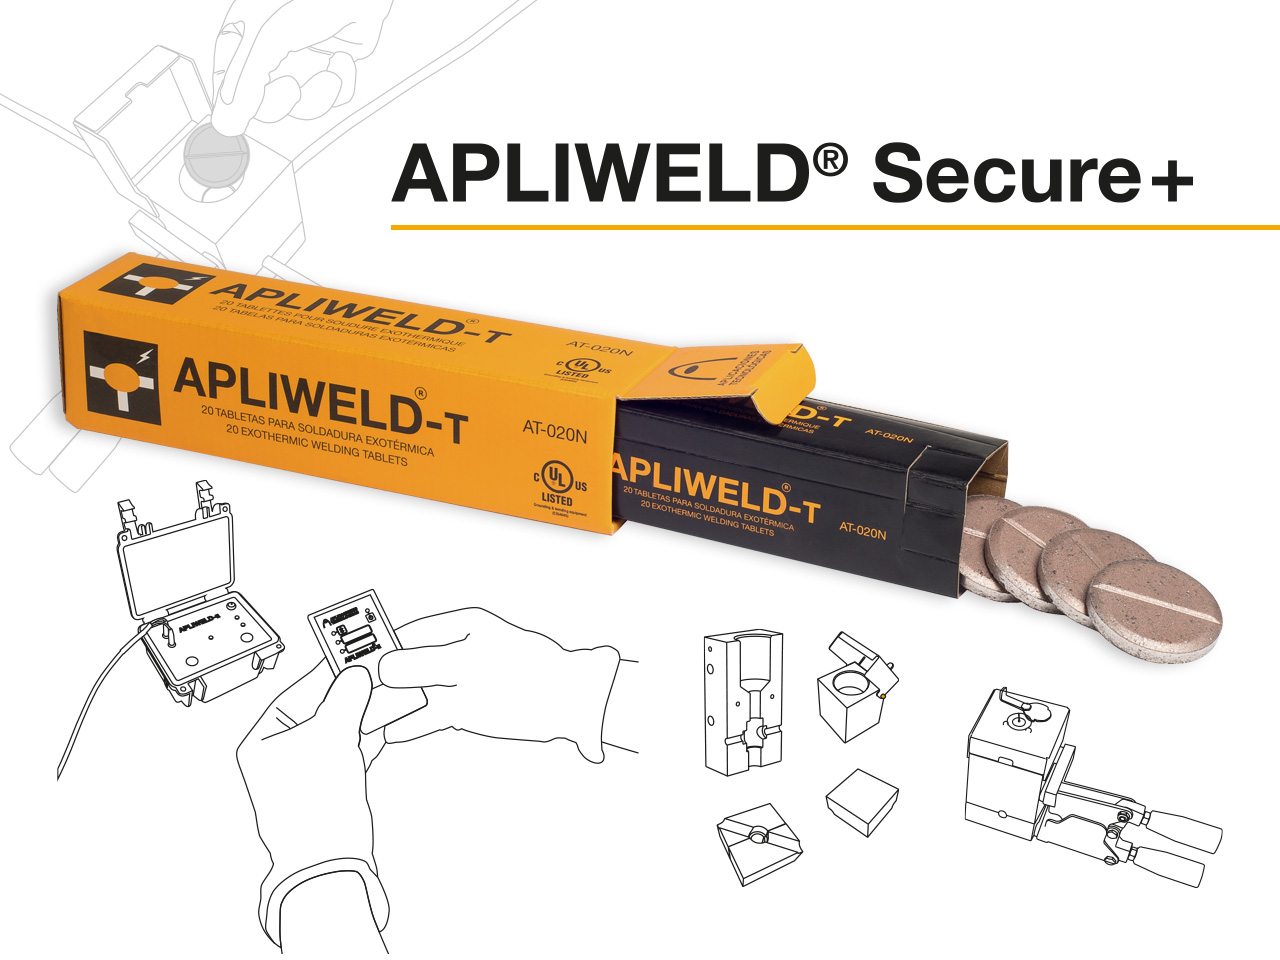 Apliweld® Secure+: soldadura exotérmica con tabletas y encendido remoto | Nuevos vídeos del procedimiento de uso con molde específico y molde múltiple